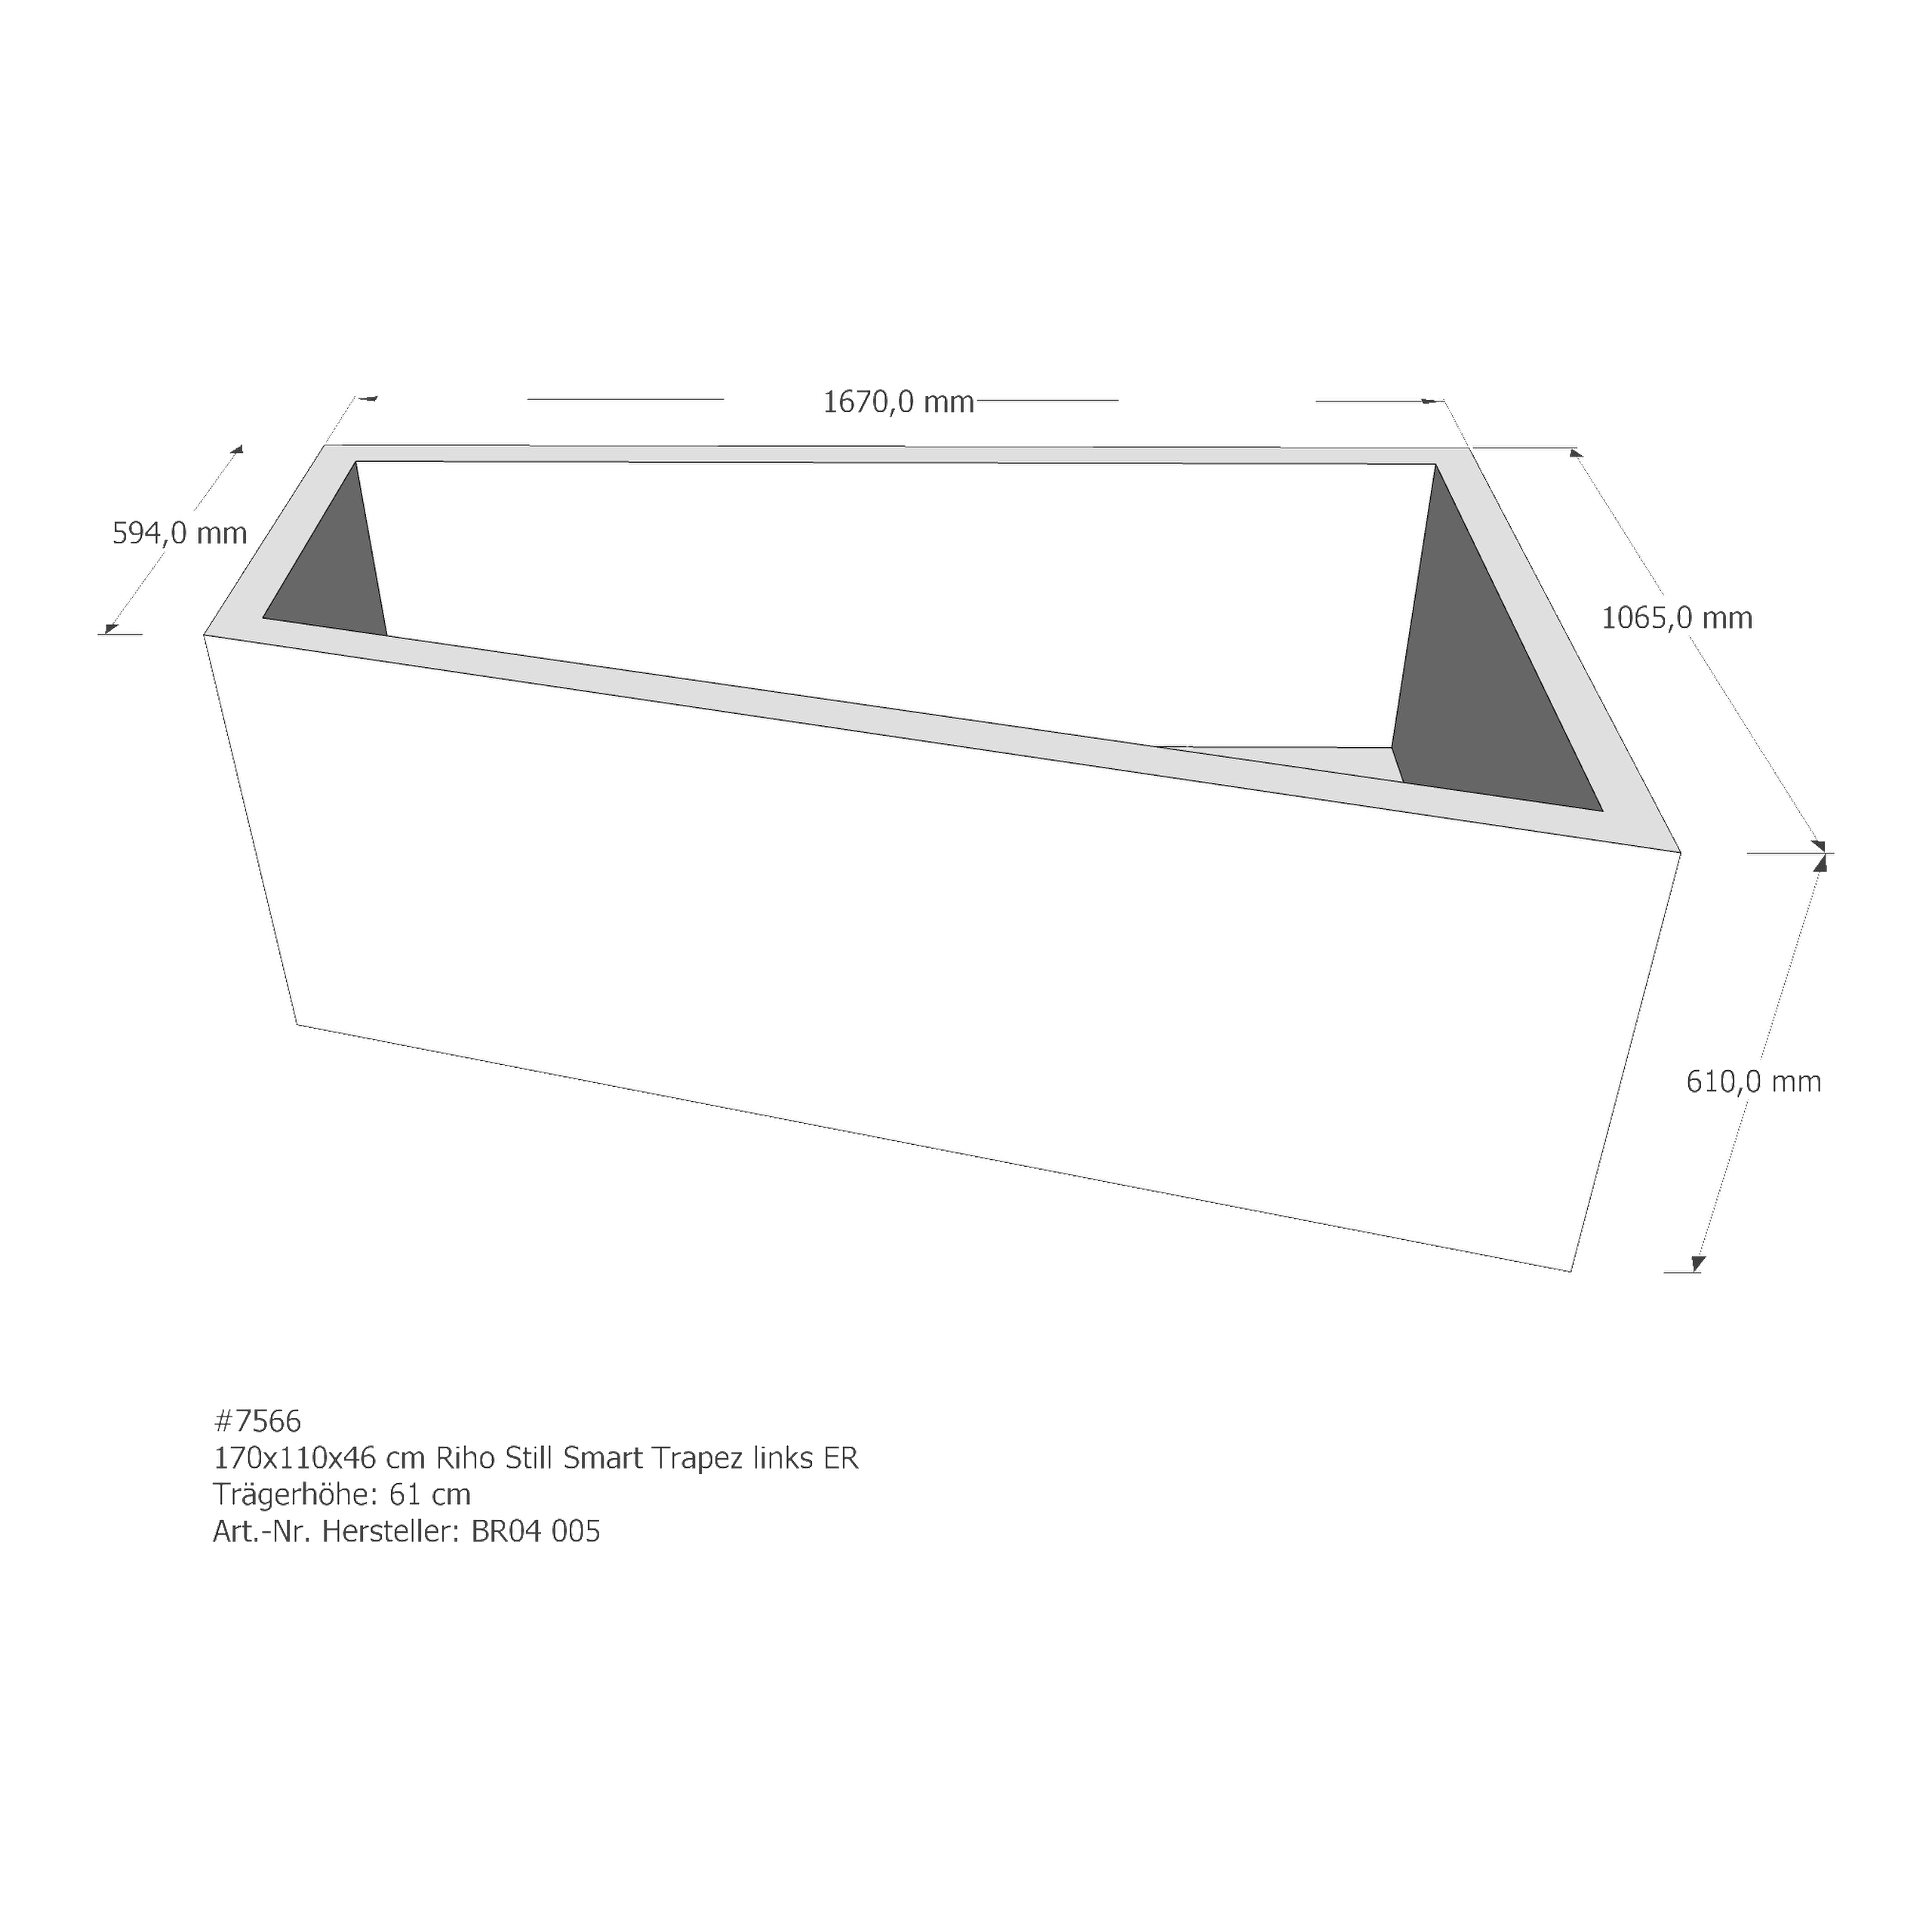 Badewannenträger für Riho Still Trapez links 170 × 110 × 46 cm